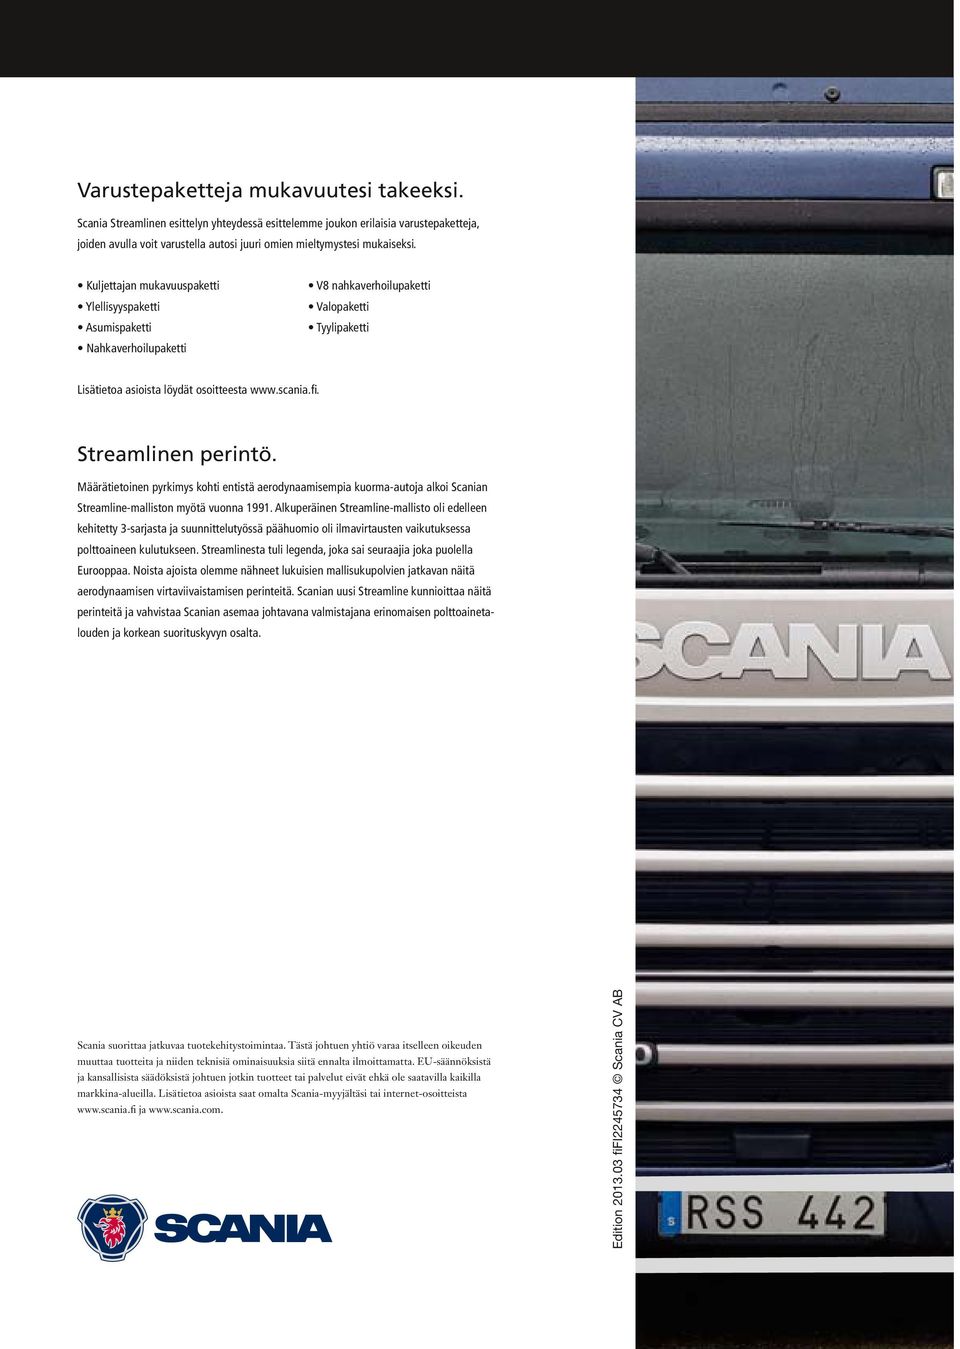 Streamlinen perintö. Määrätietoinen pyrkimys kohti entistä aerodynaamisempia kuorma-autoja alkoi Scanian Streamline-malliston myötä vuonna 1991.